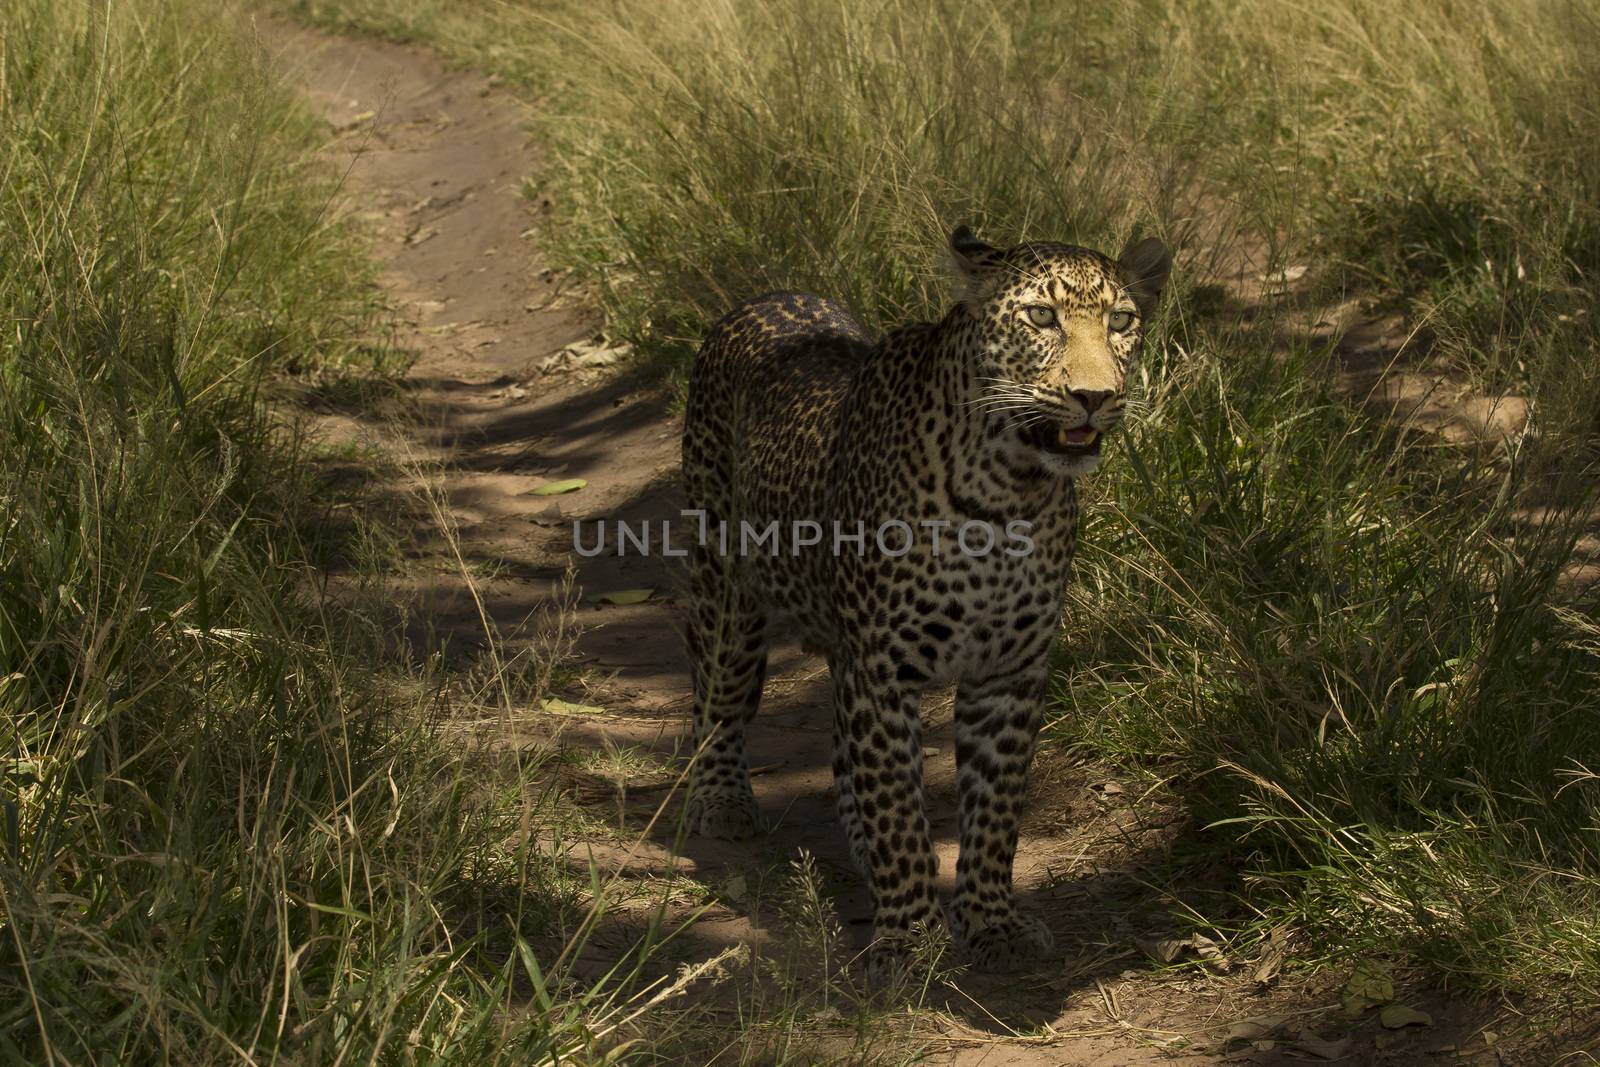 Leopard in the wilderness of Africa by ozkanzozmen